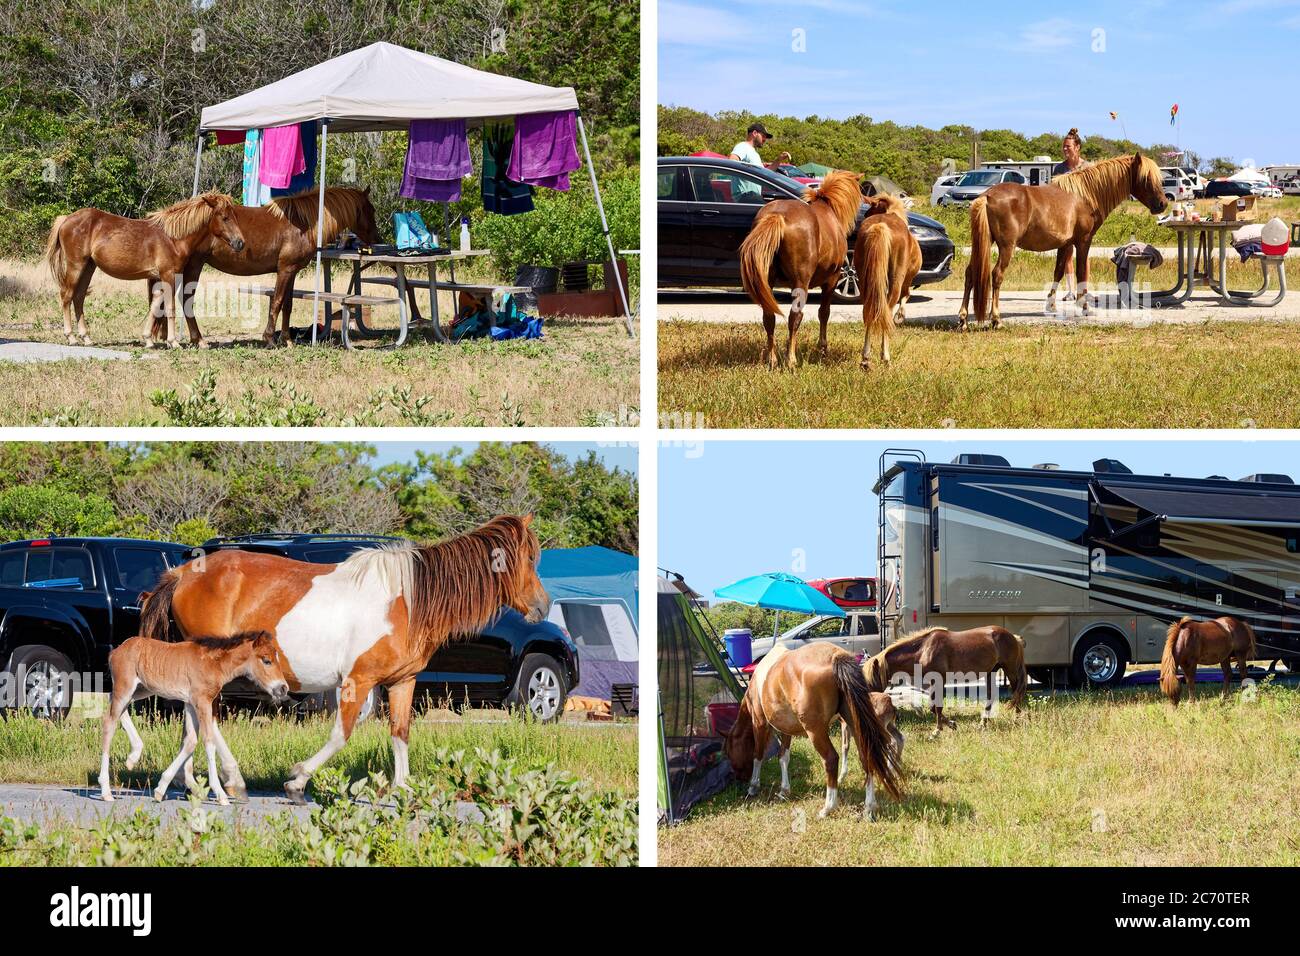 Wildpferde Collage, Tiere zu Fuß unter Camper, Campingplätze, Wohnmobile, Zelte, Assateague State Park, Maryland, USA Stockfoto